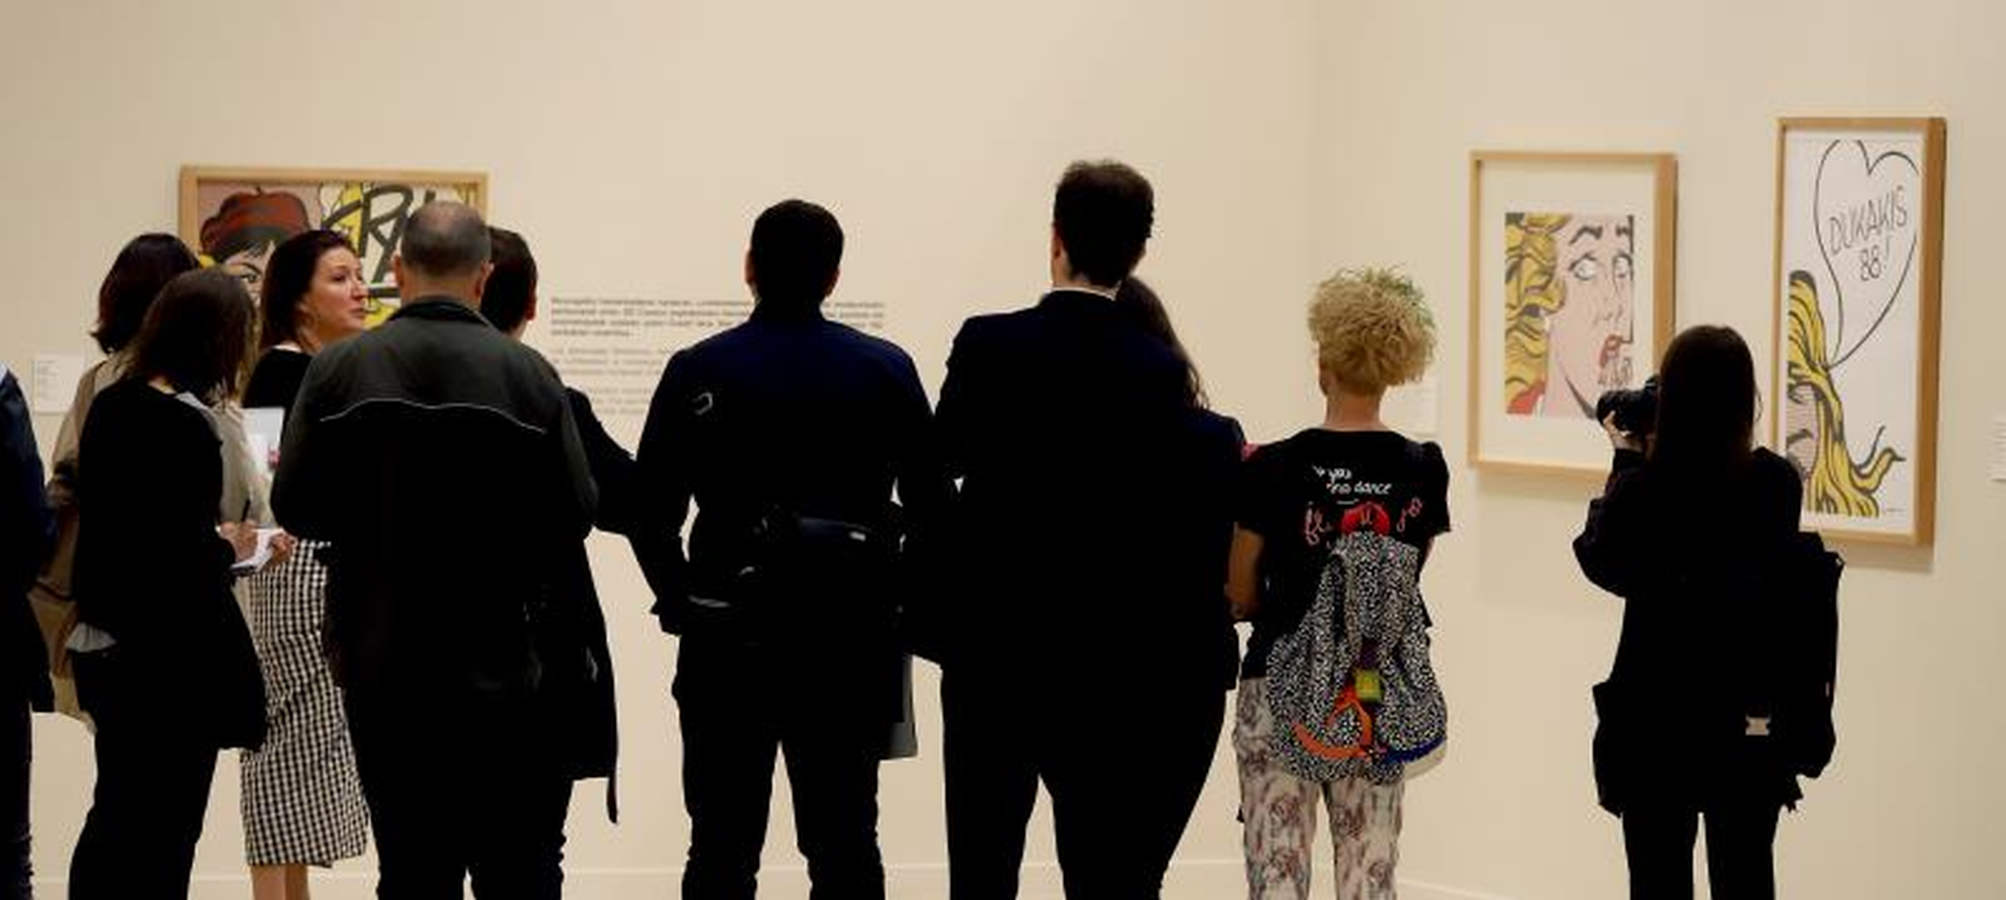 El colorido del pop americano recala este verano en San Sebastián en una exposición en la Sala Kubo con un centenar de piezas de Andy Warhol, Robert Rauschenberg, Roy Litchtenstein, Keith Haring y Robert Indiana que reflejan el espíritu de un movimiento que elevó los objetos cotidianos a la categoría de arte.